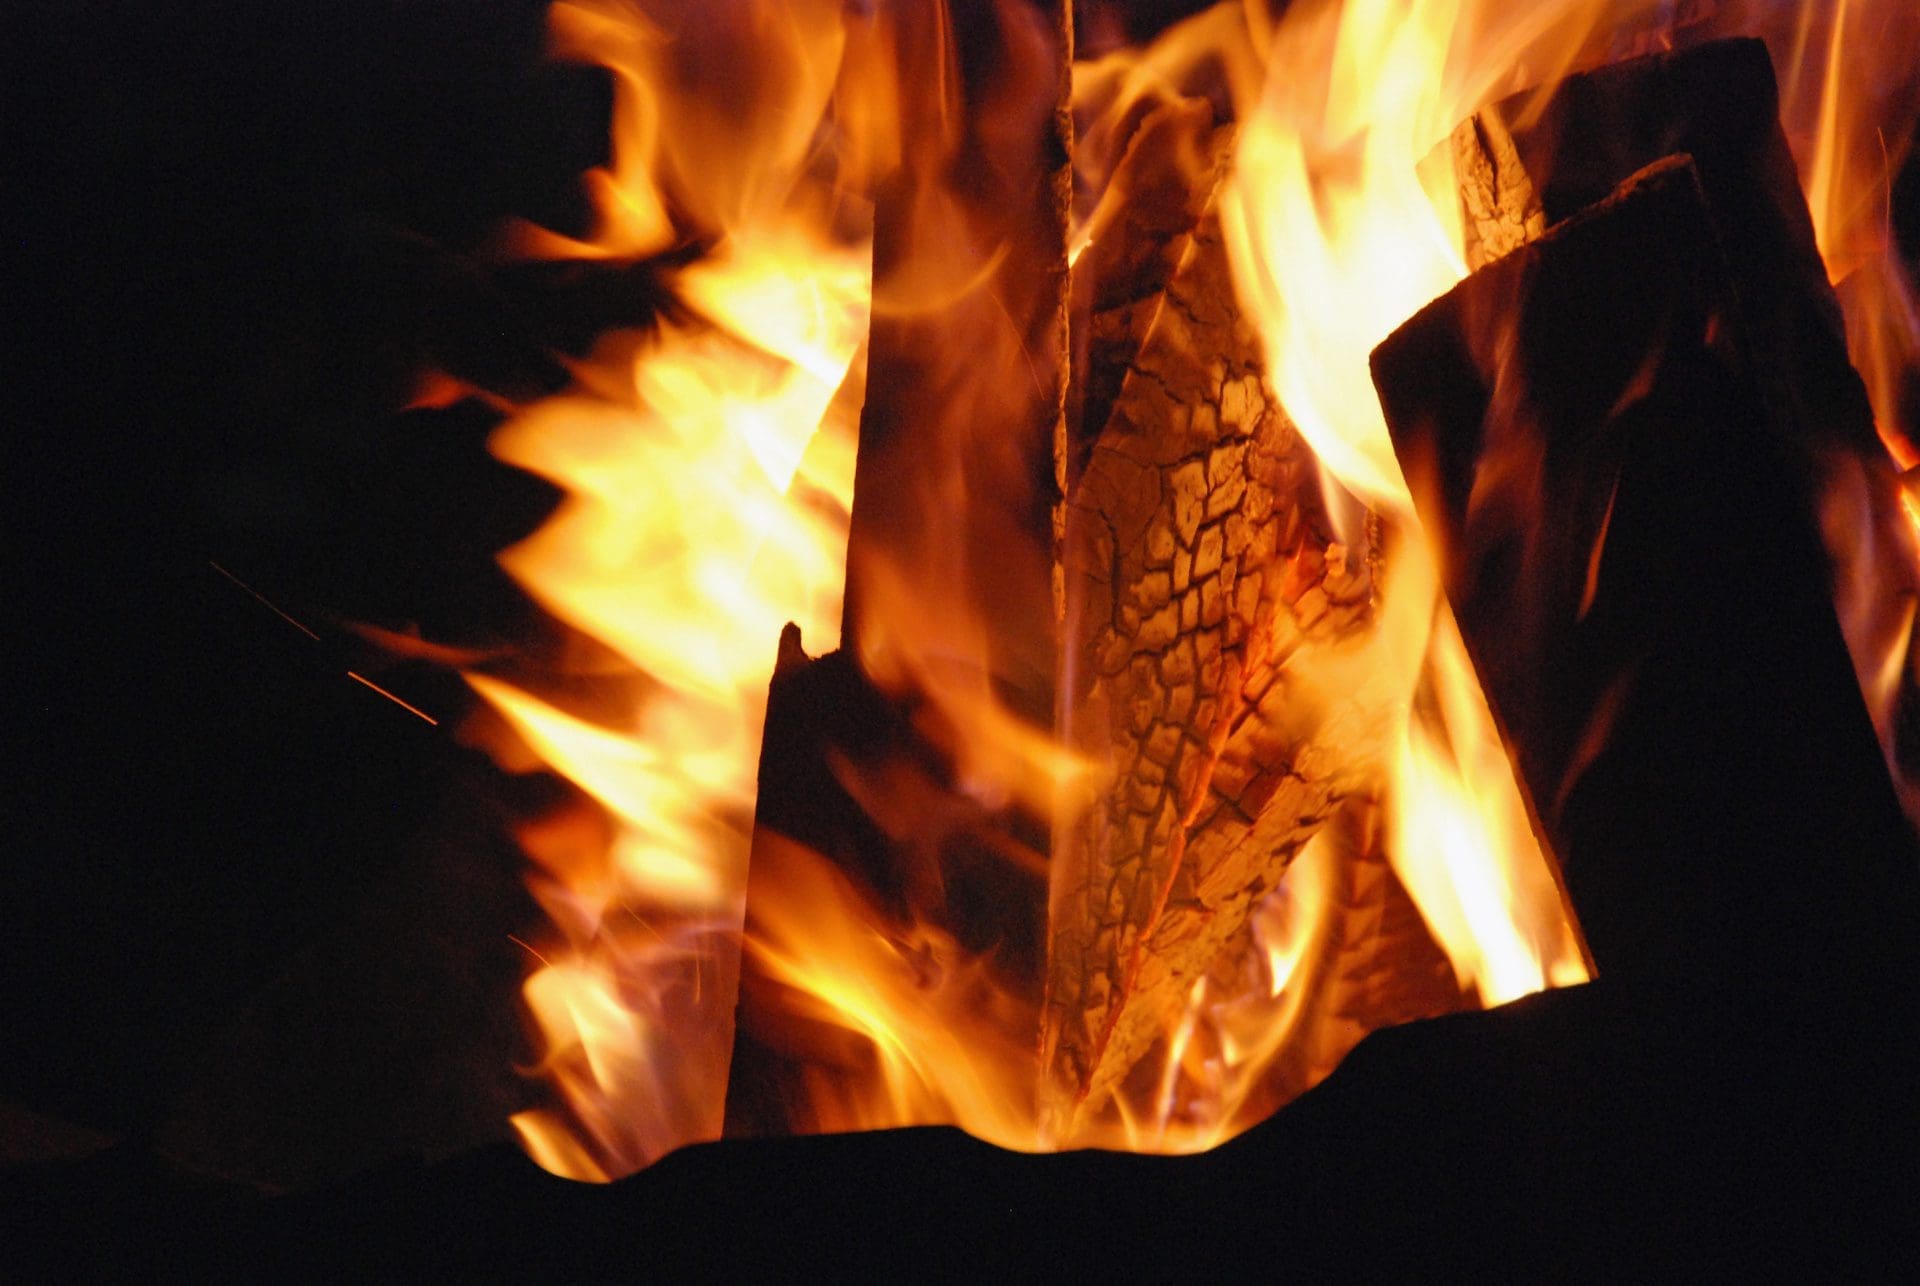 Kaminbrand | So behaglich das Feuer in einem Kamin sein kann, so gefährlich kann ein Kaminbrand werden. - Wer zahlt den Schaden, nachdem das Feuer gelöscht wurde? Welche Ursachen waren verantwortlich? (© doris oberfrank-list / stock.adobe.com)